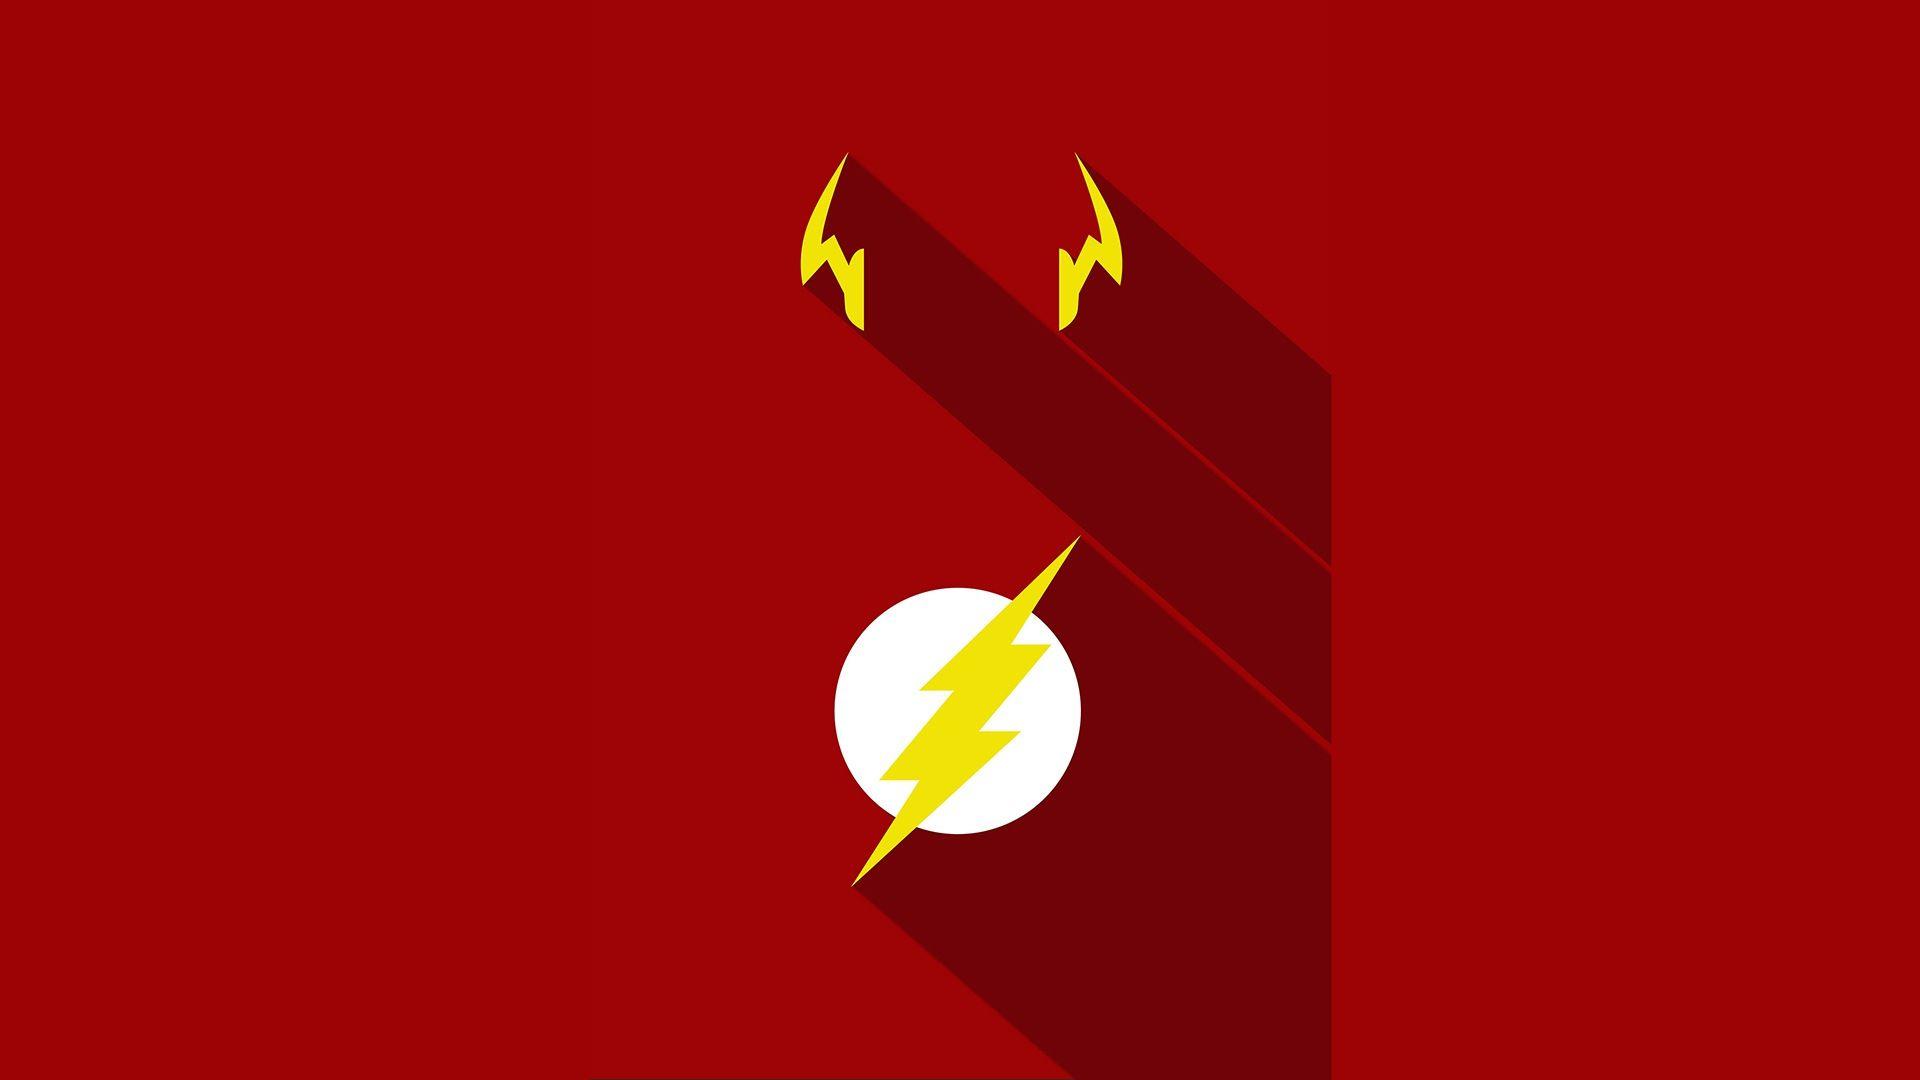 Flash. DC Universe Wallpaper